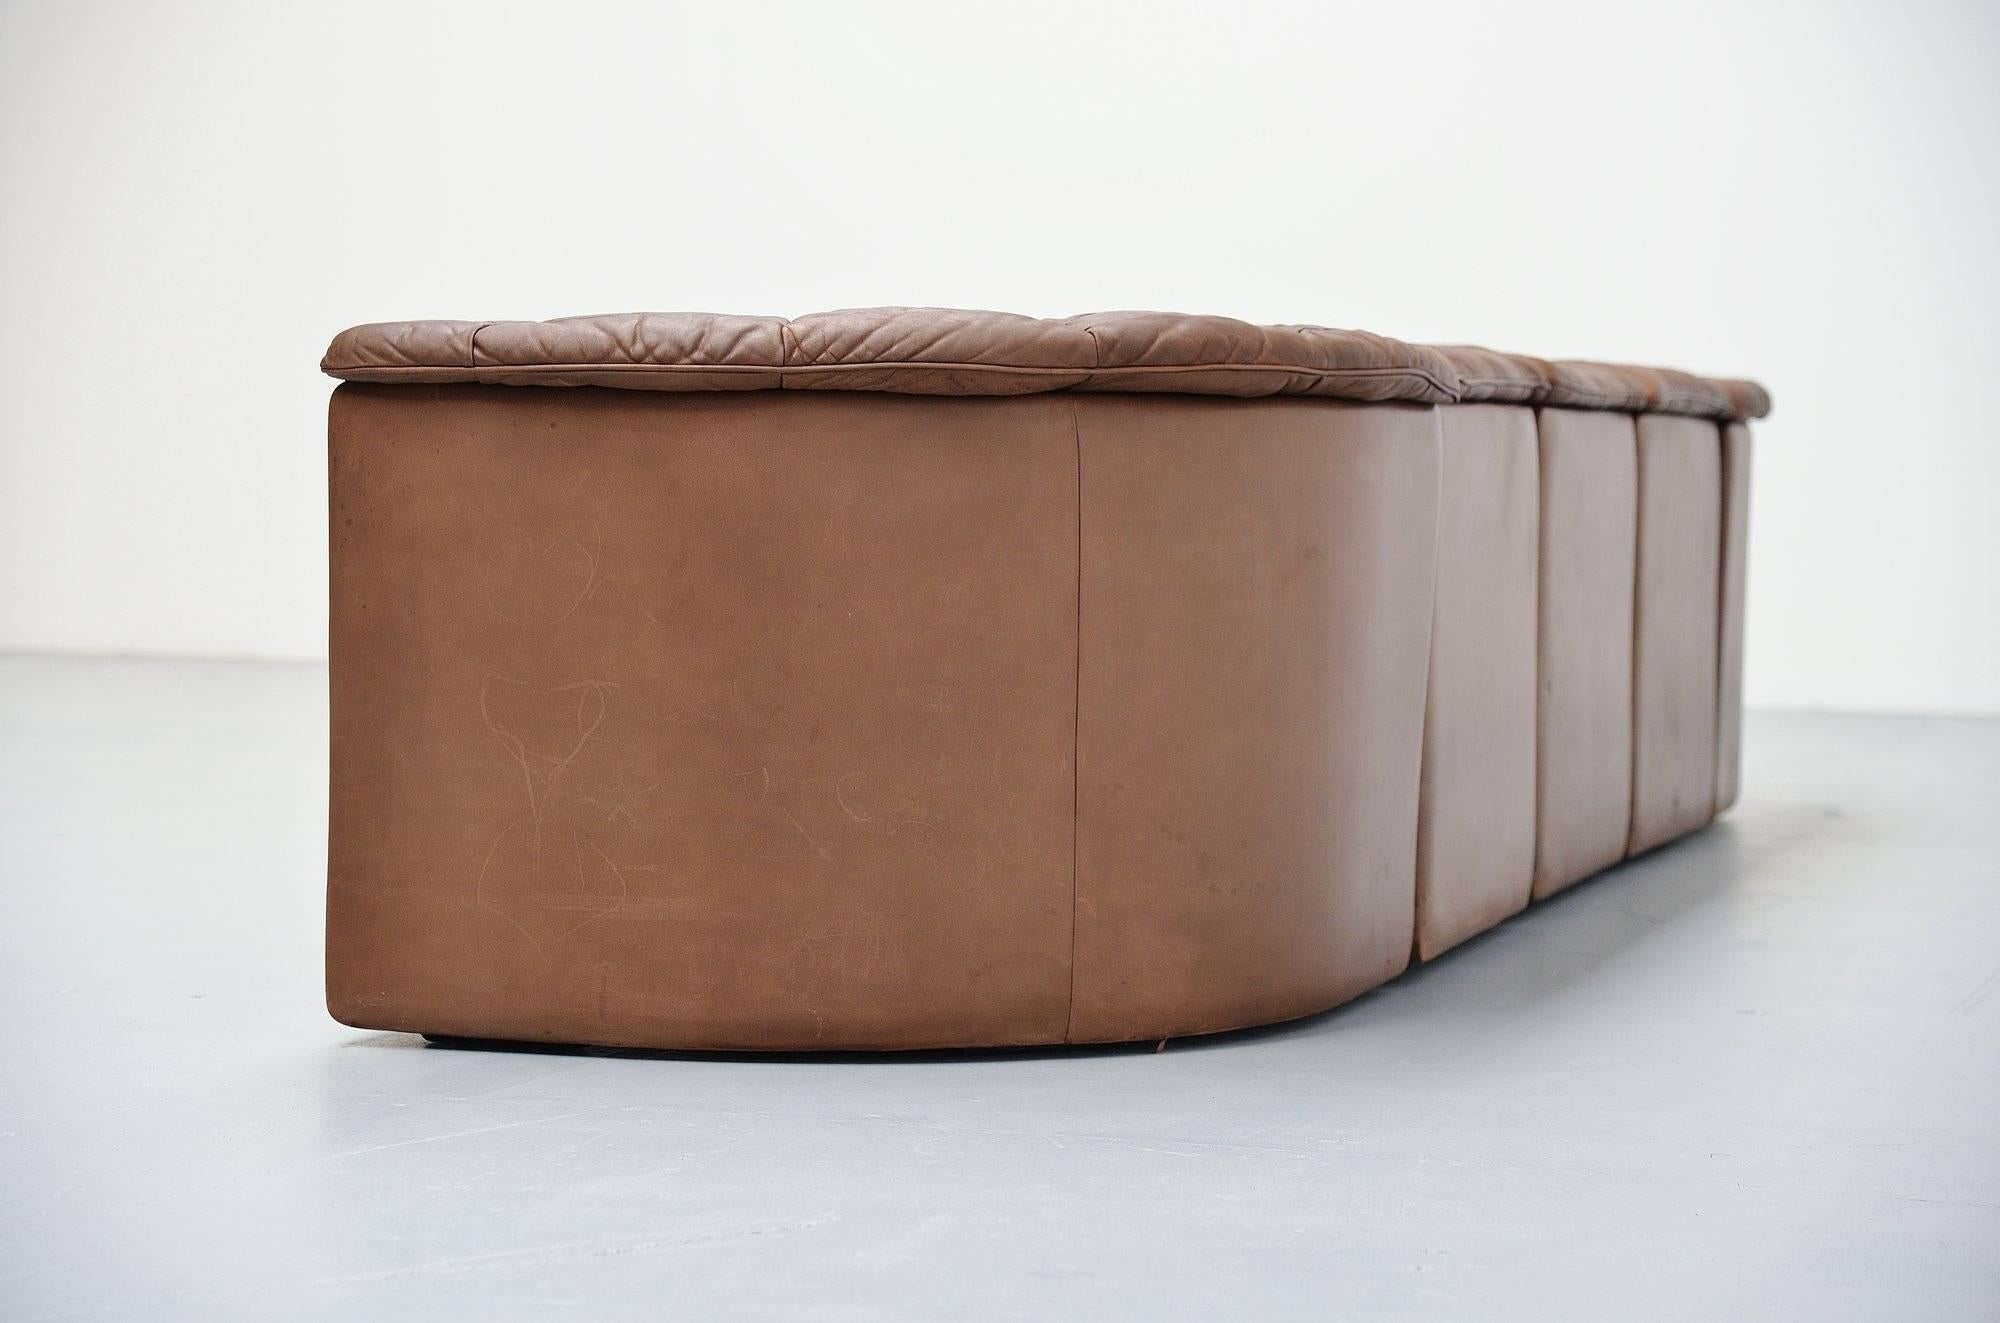 Swiss De Sede Ds11 Patchwork Sofa in Chocolate Brown, Switzerland